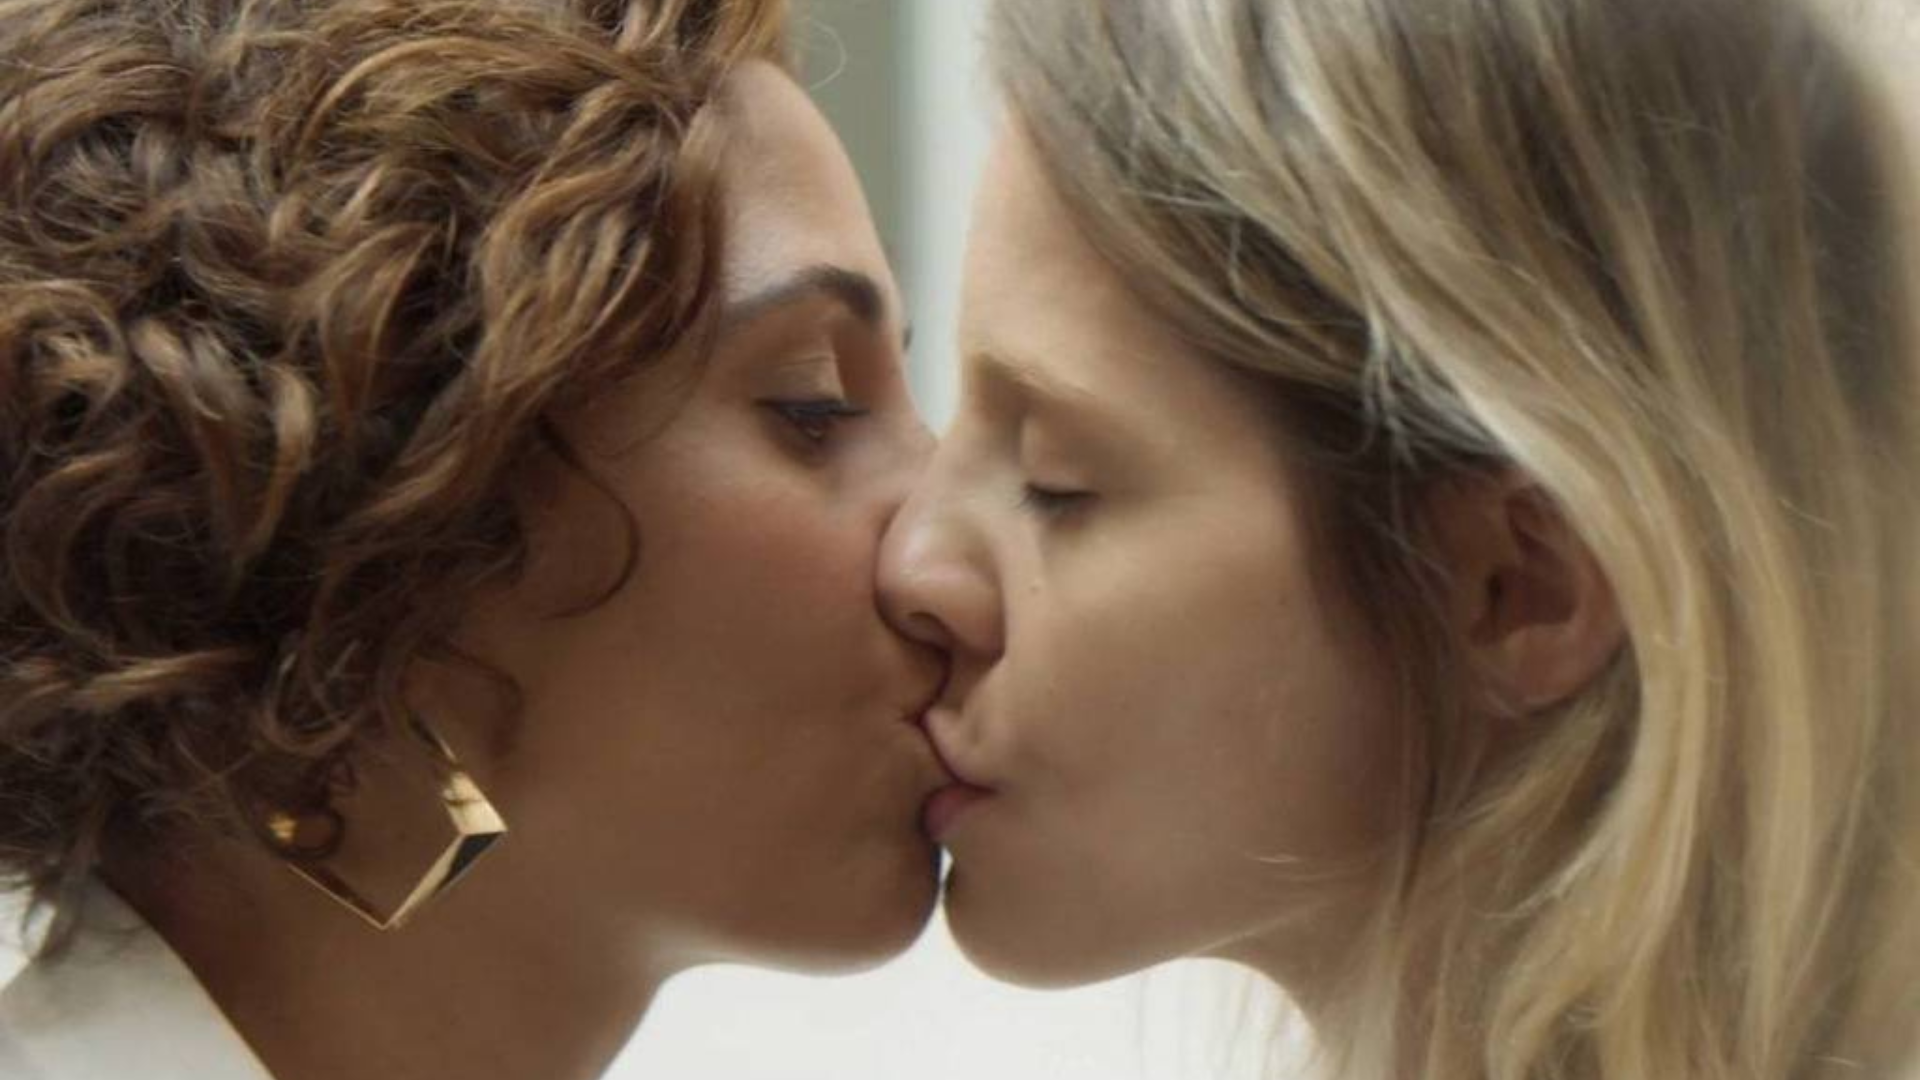 Globo censura beijo entre duas mulheres mais uma vez após corte de ‘Vai na Fé’